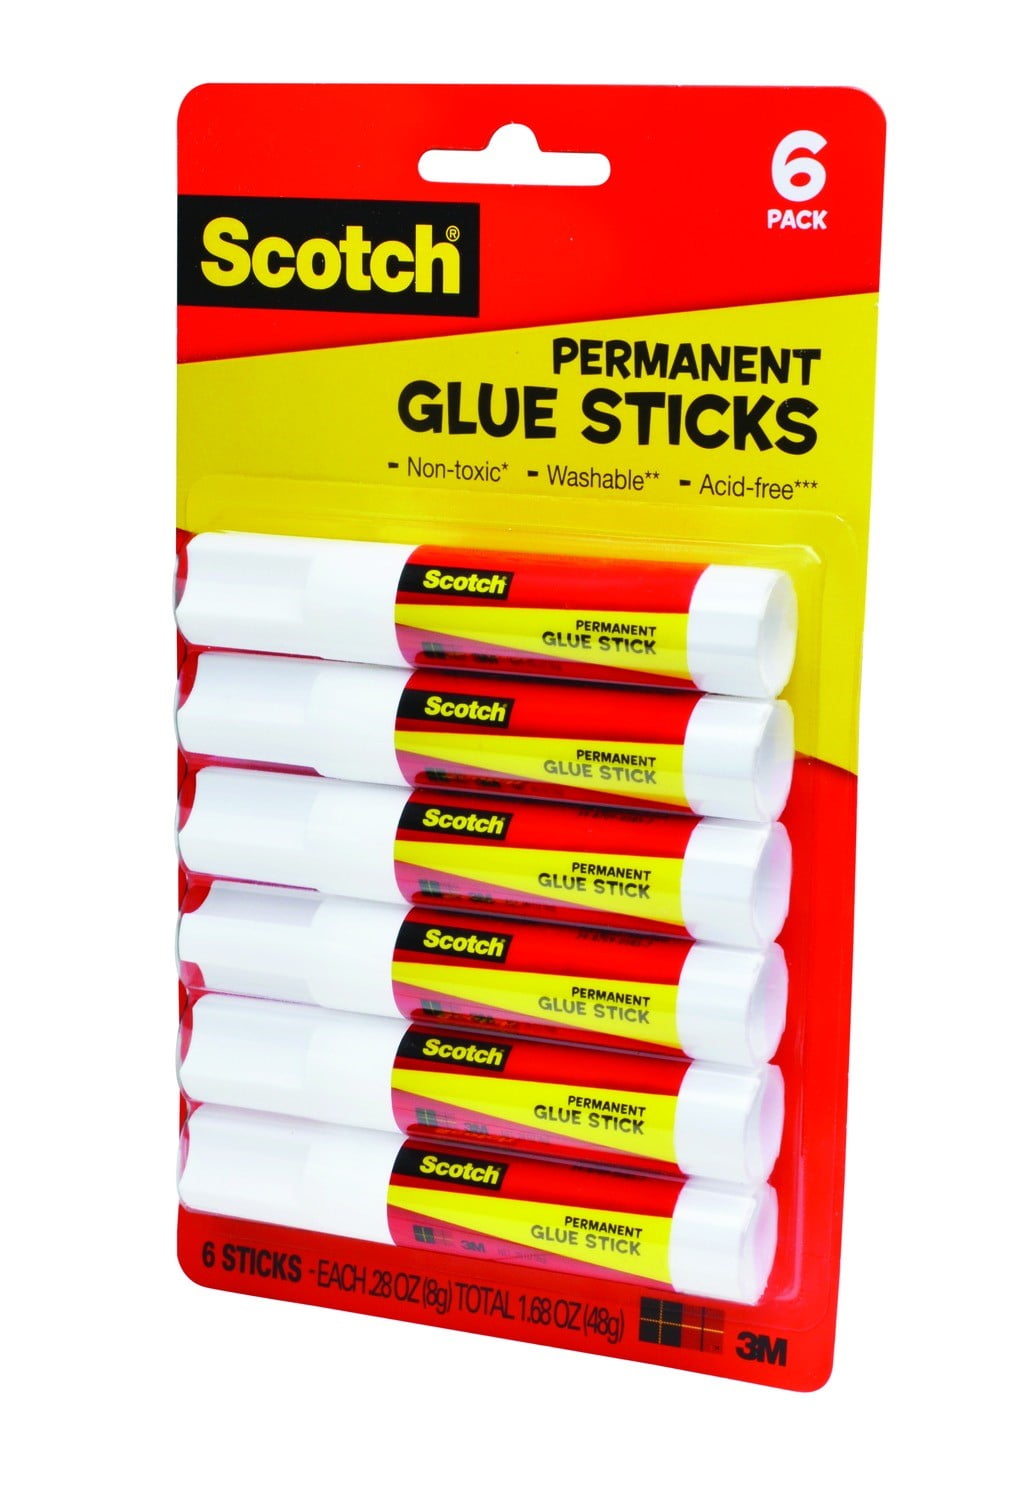 Scotch Permanent Glue Stick, 0.28 oz, 24 ct – RJP Unlimited